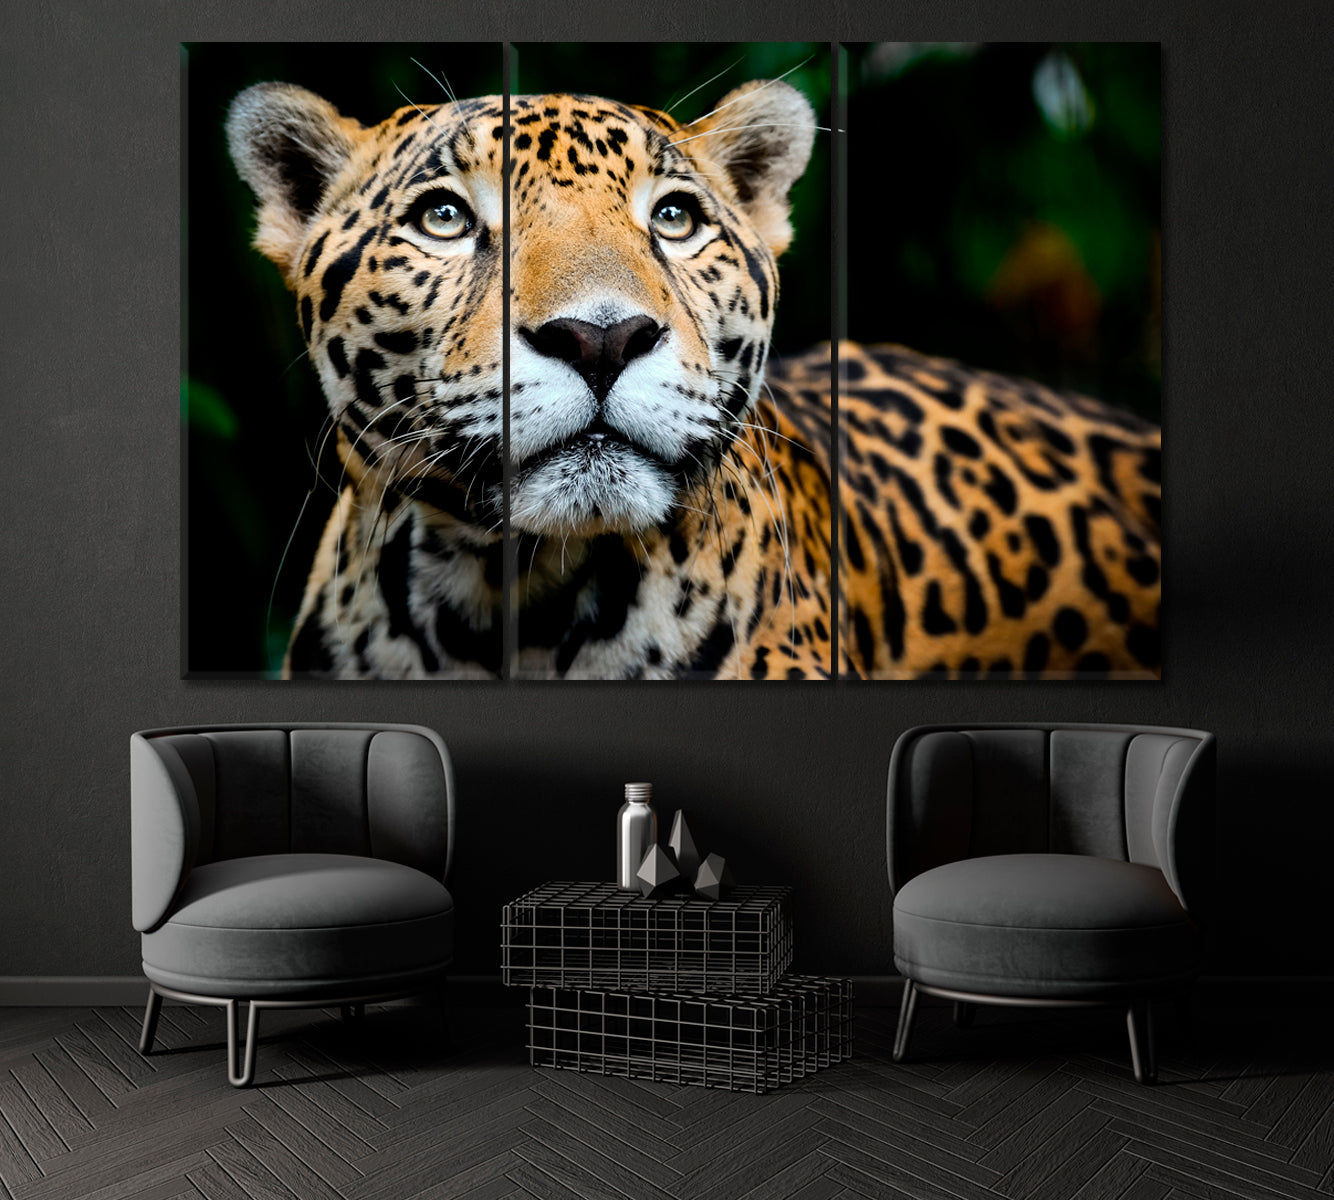 Jaguar Portrait Canvas Print ArtLexy 3 Panels 36"x24" inches 